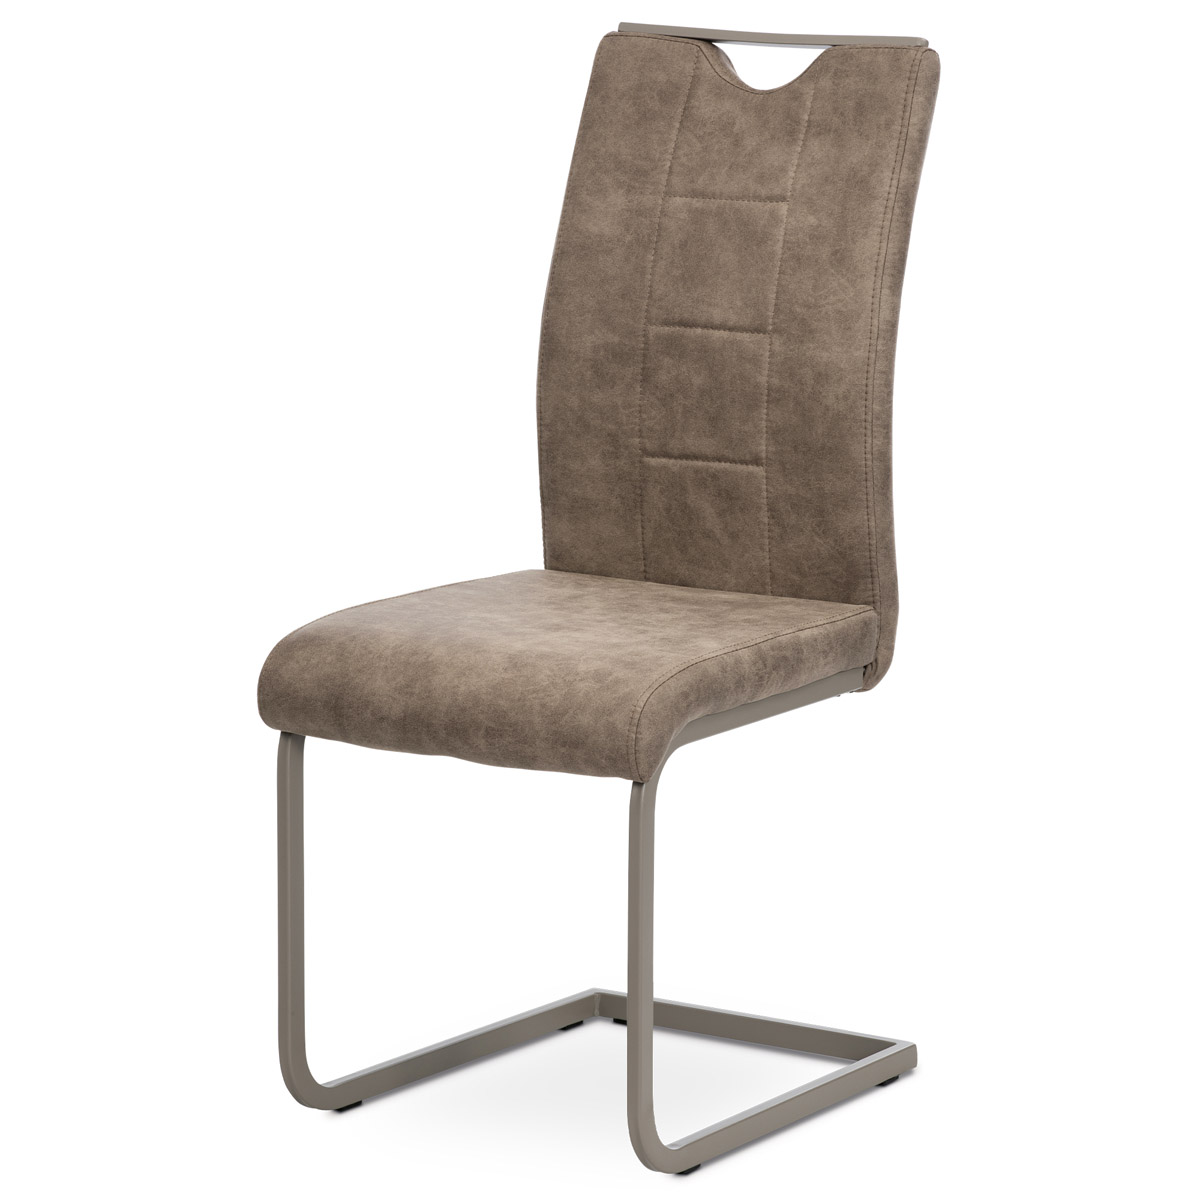 Jídelní židle DCL-412 LAN3 látka lanýžová v dekoru vintage kůže, bílé prošití, kov lanýžový lak